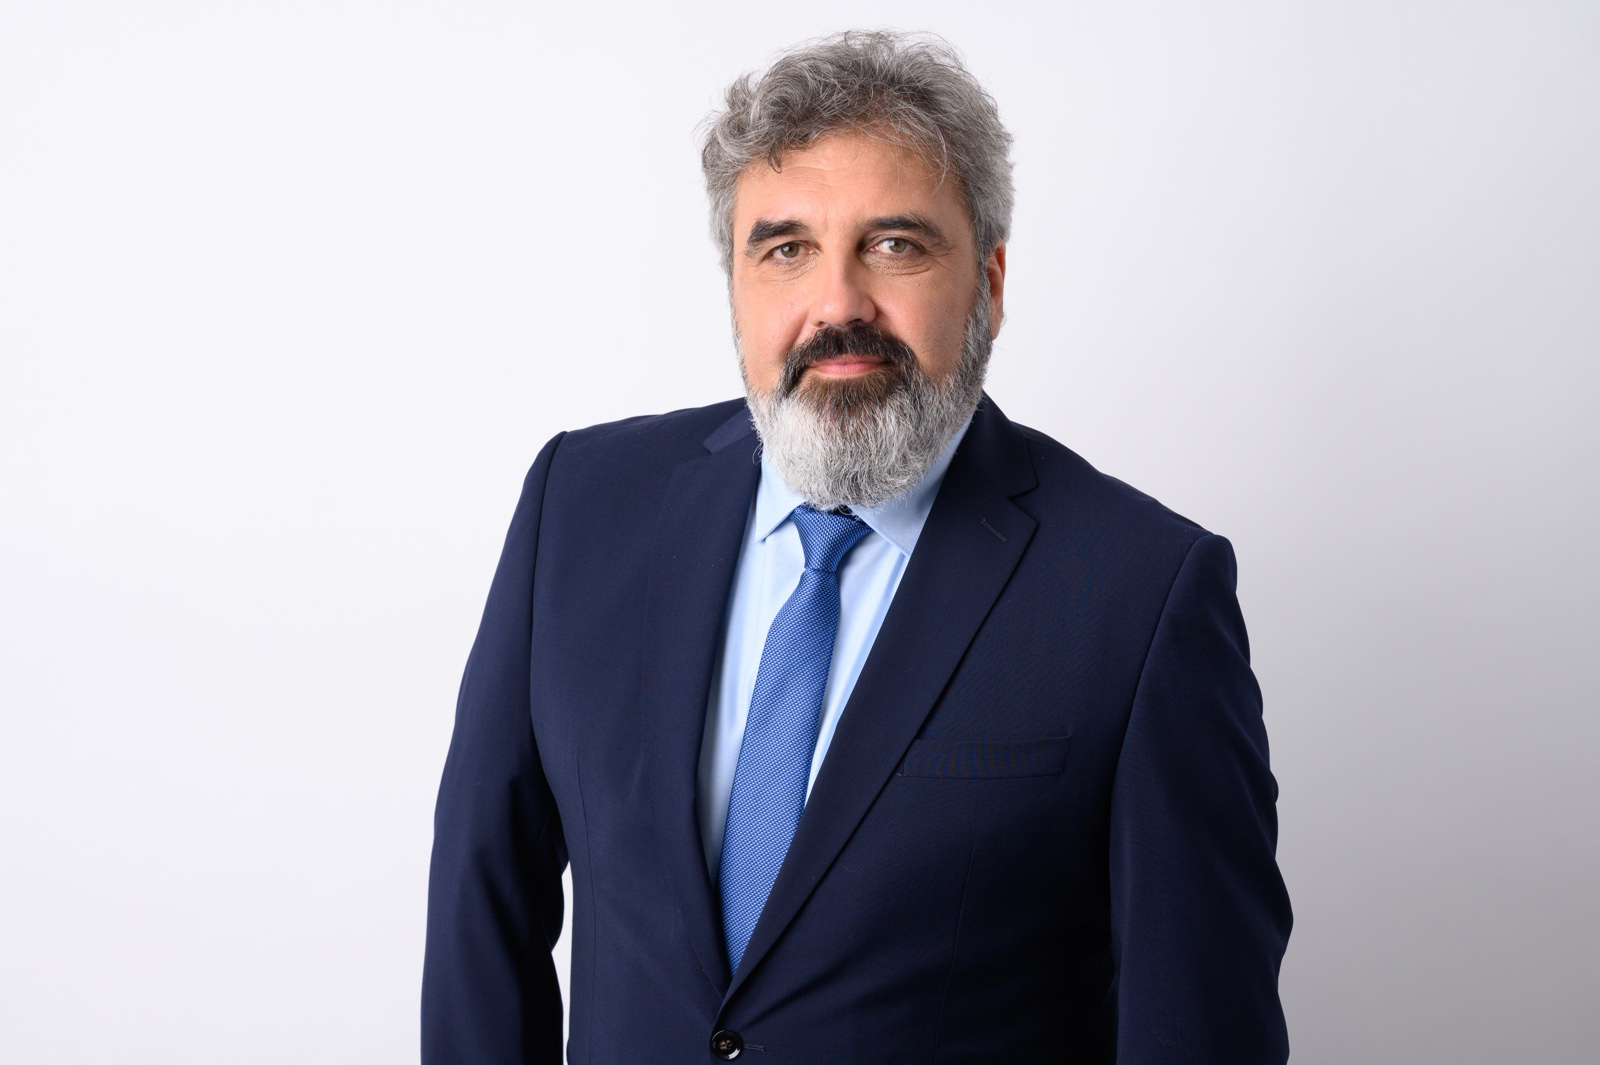 Момчил Даскалов кандидат за кмет на район “Сердика” в София, издигнат от ПП “Зелено движение” за местните избори през октомври 2023